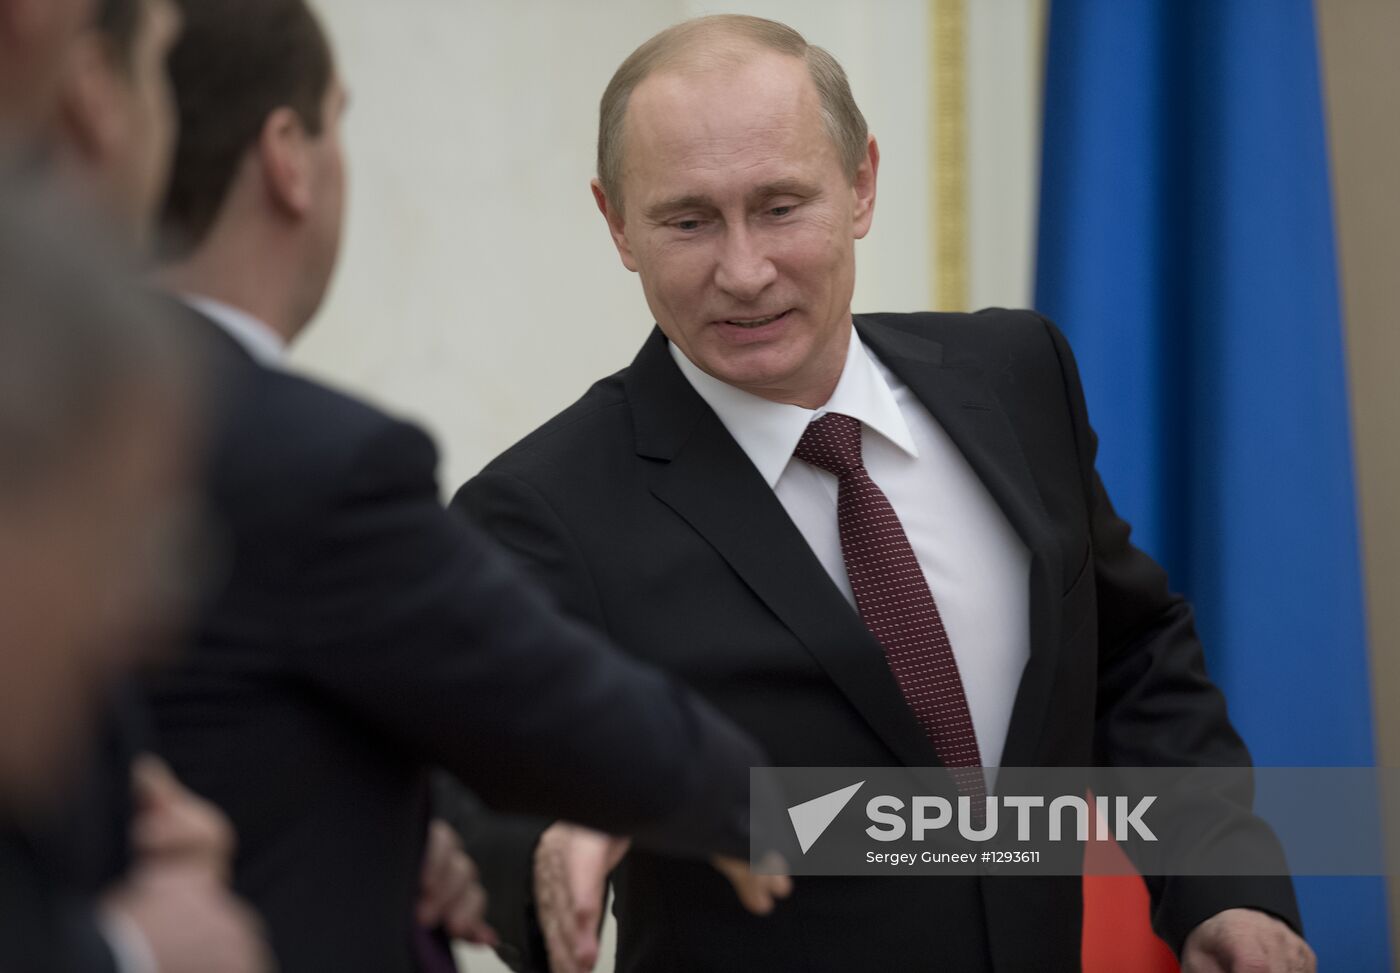 Vladimir Putin chairs Security Council's meeting